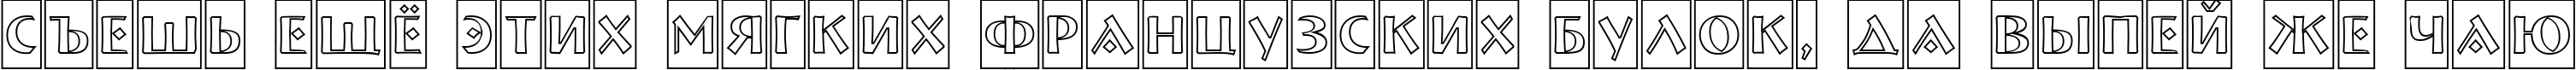 Пример написания шрифтом a_BremenCmOtl текста на русском